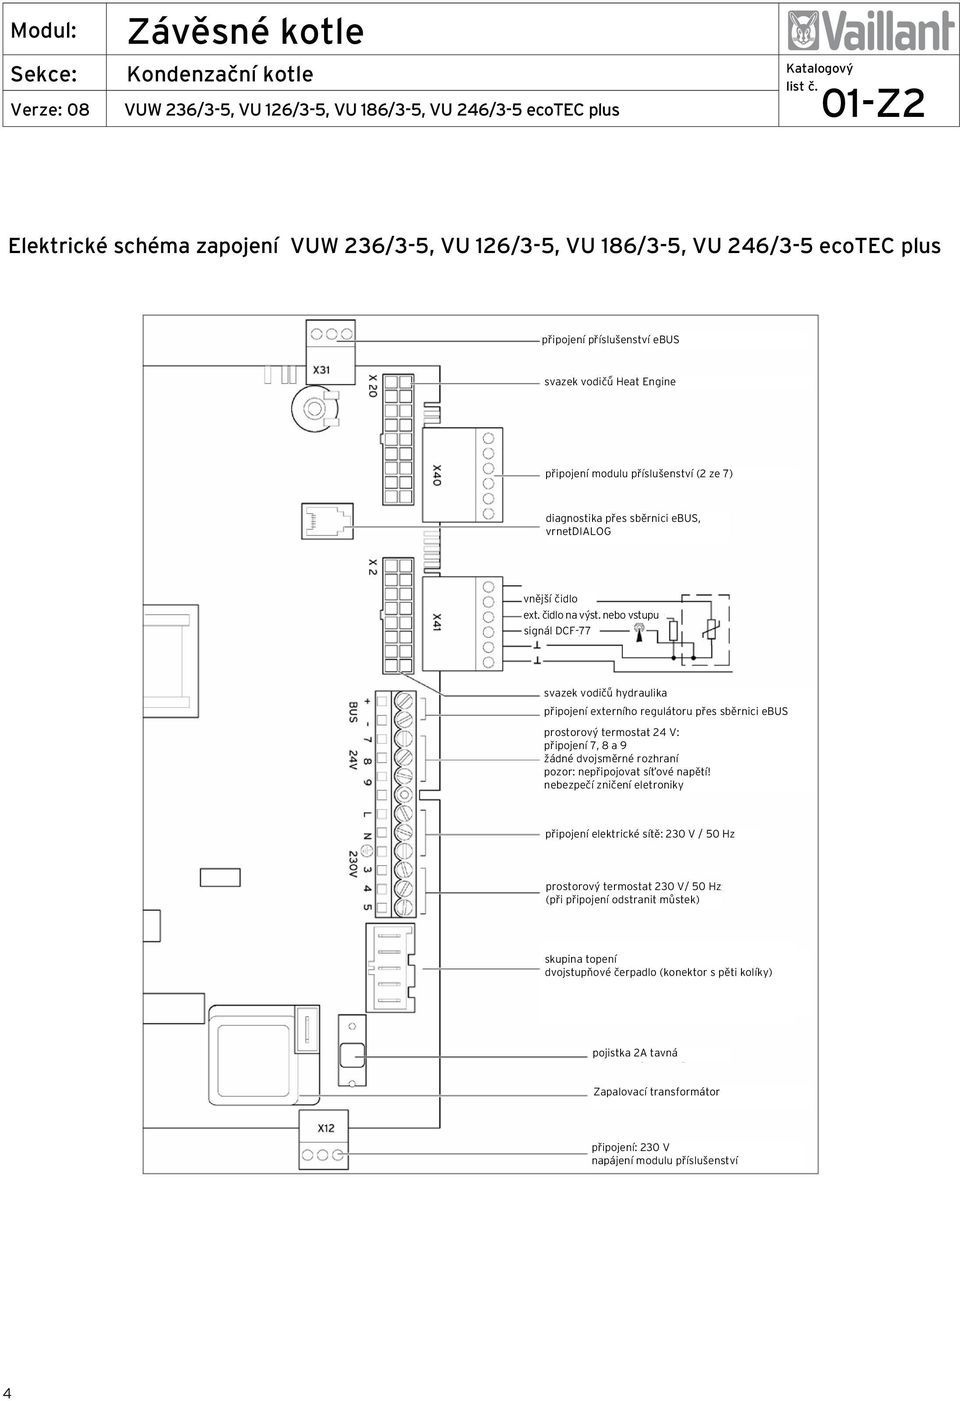 nebo vstupu signál DCF-77 svazek vodičů hydraulika připojení externího regulátoru přes sběrnici ebus prostorový termostat 24 V: připojení 7, 8 a 9 žádné dvojsměrné rozhraní pozor: nepřipojovat síťové